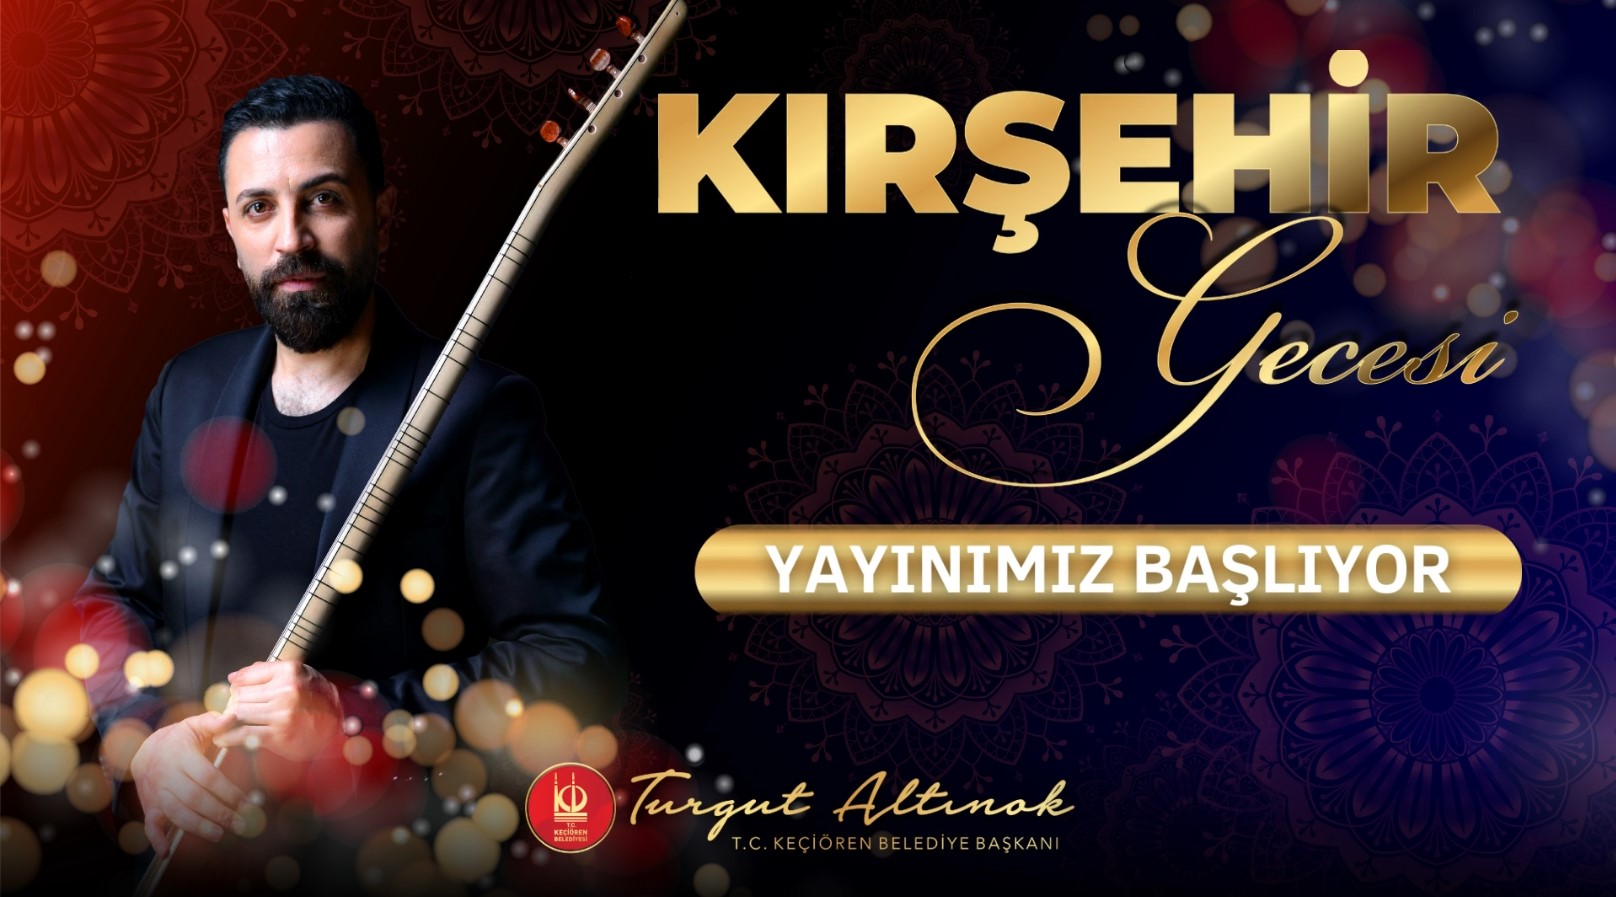 Kırşehir Gecesi - İsmail Altunsaray Konseri